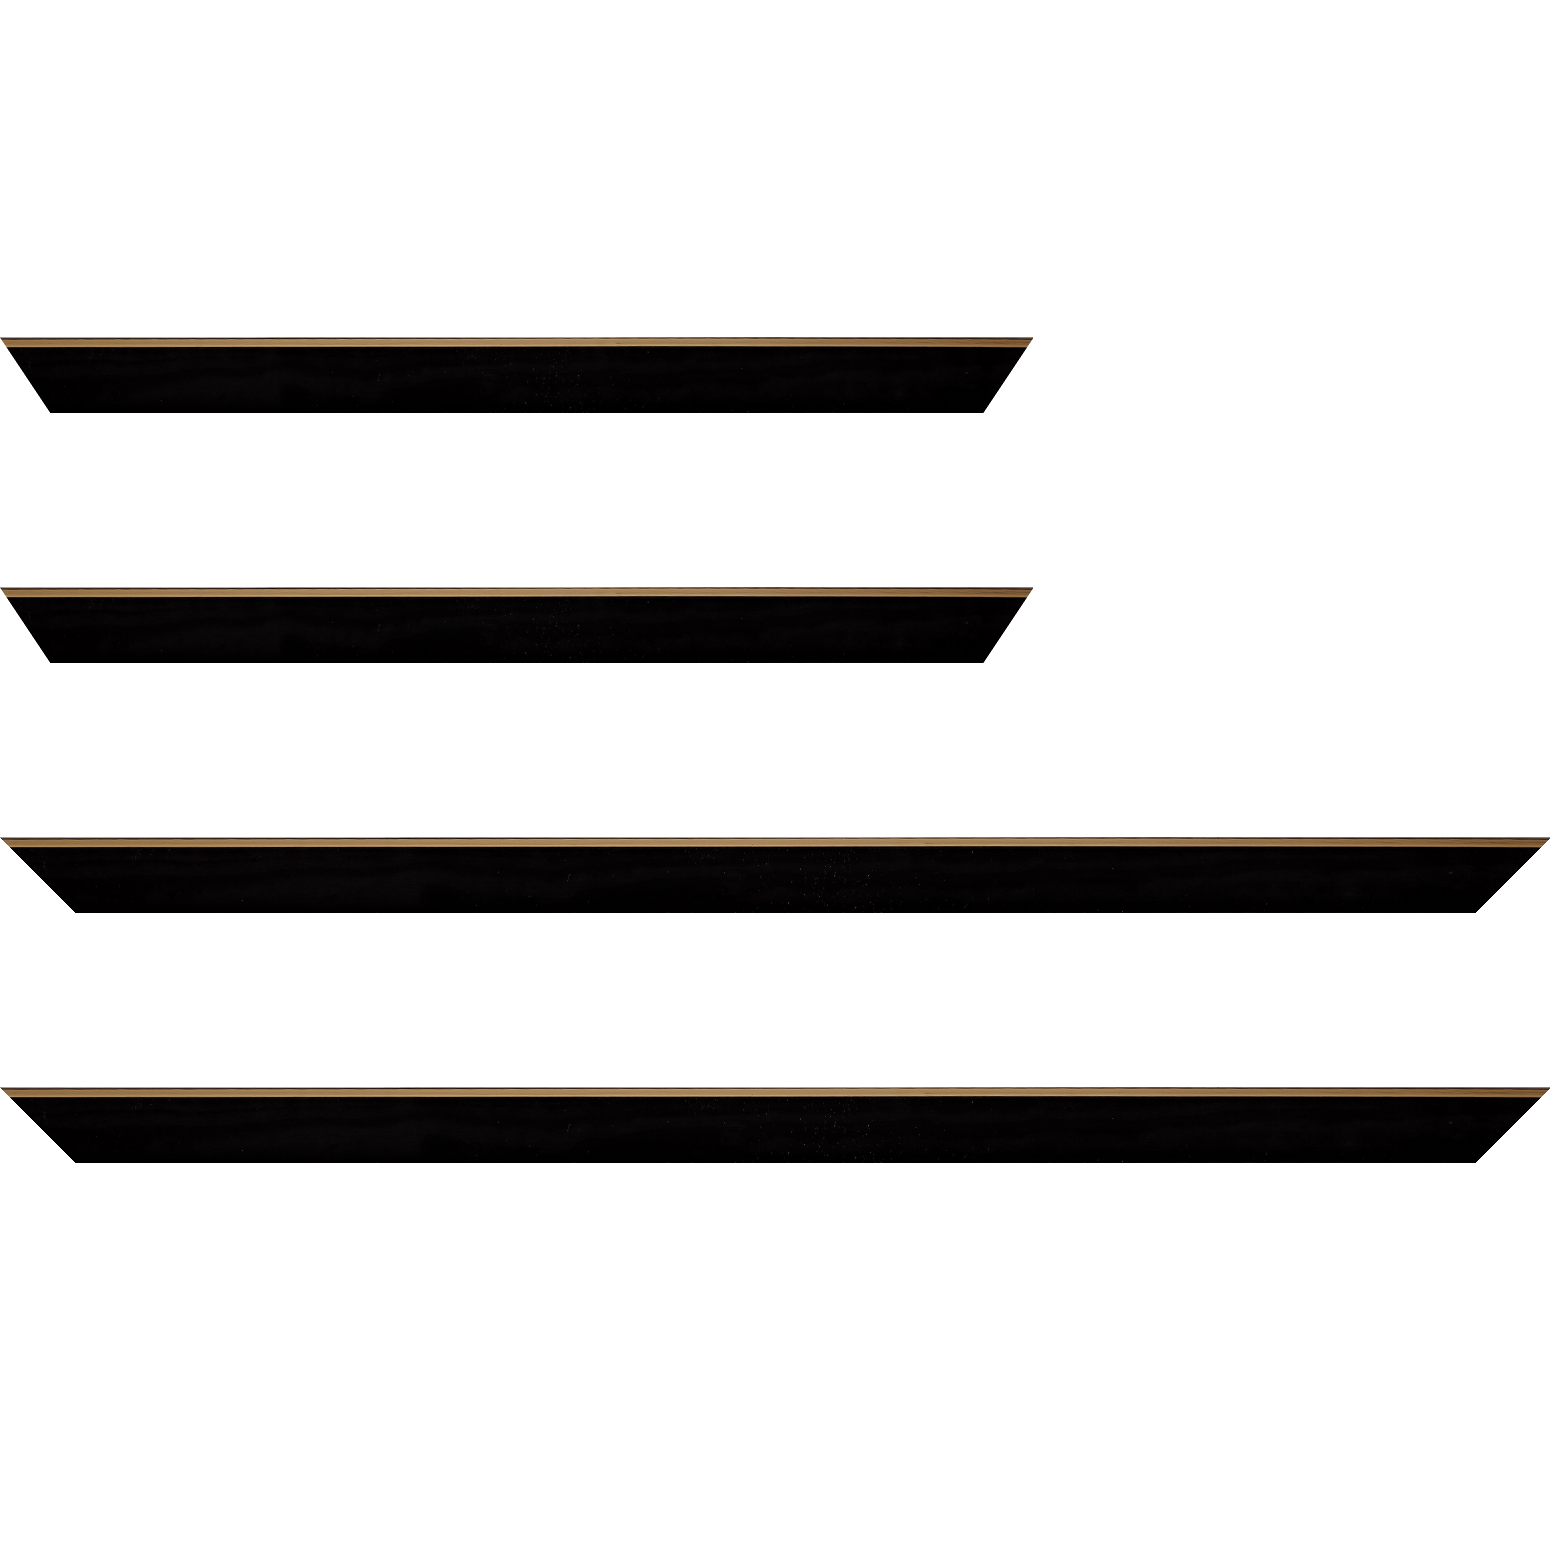 Baguette bois profil arrondi en pente plongeant largeur 2.4cm couleur noir satiné,veine du bois  apparent (pin) , angle du cadre extérieur filet or chromé - 24x30